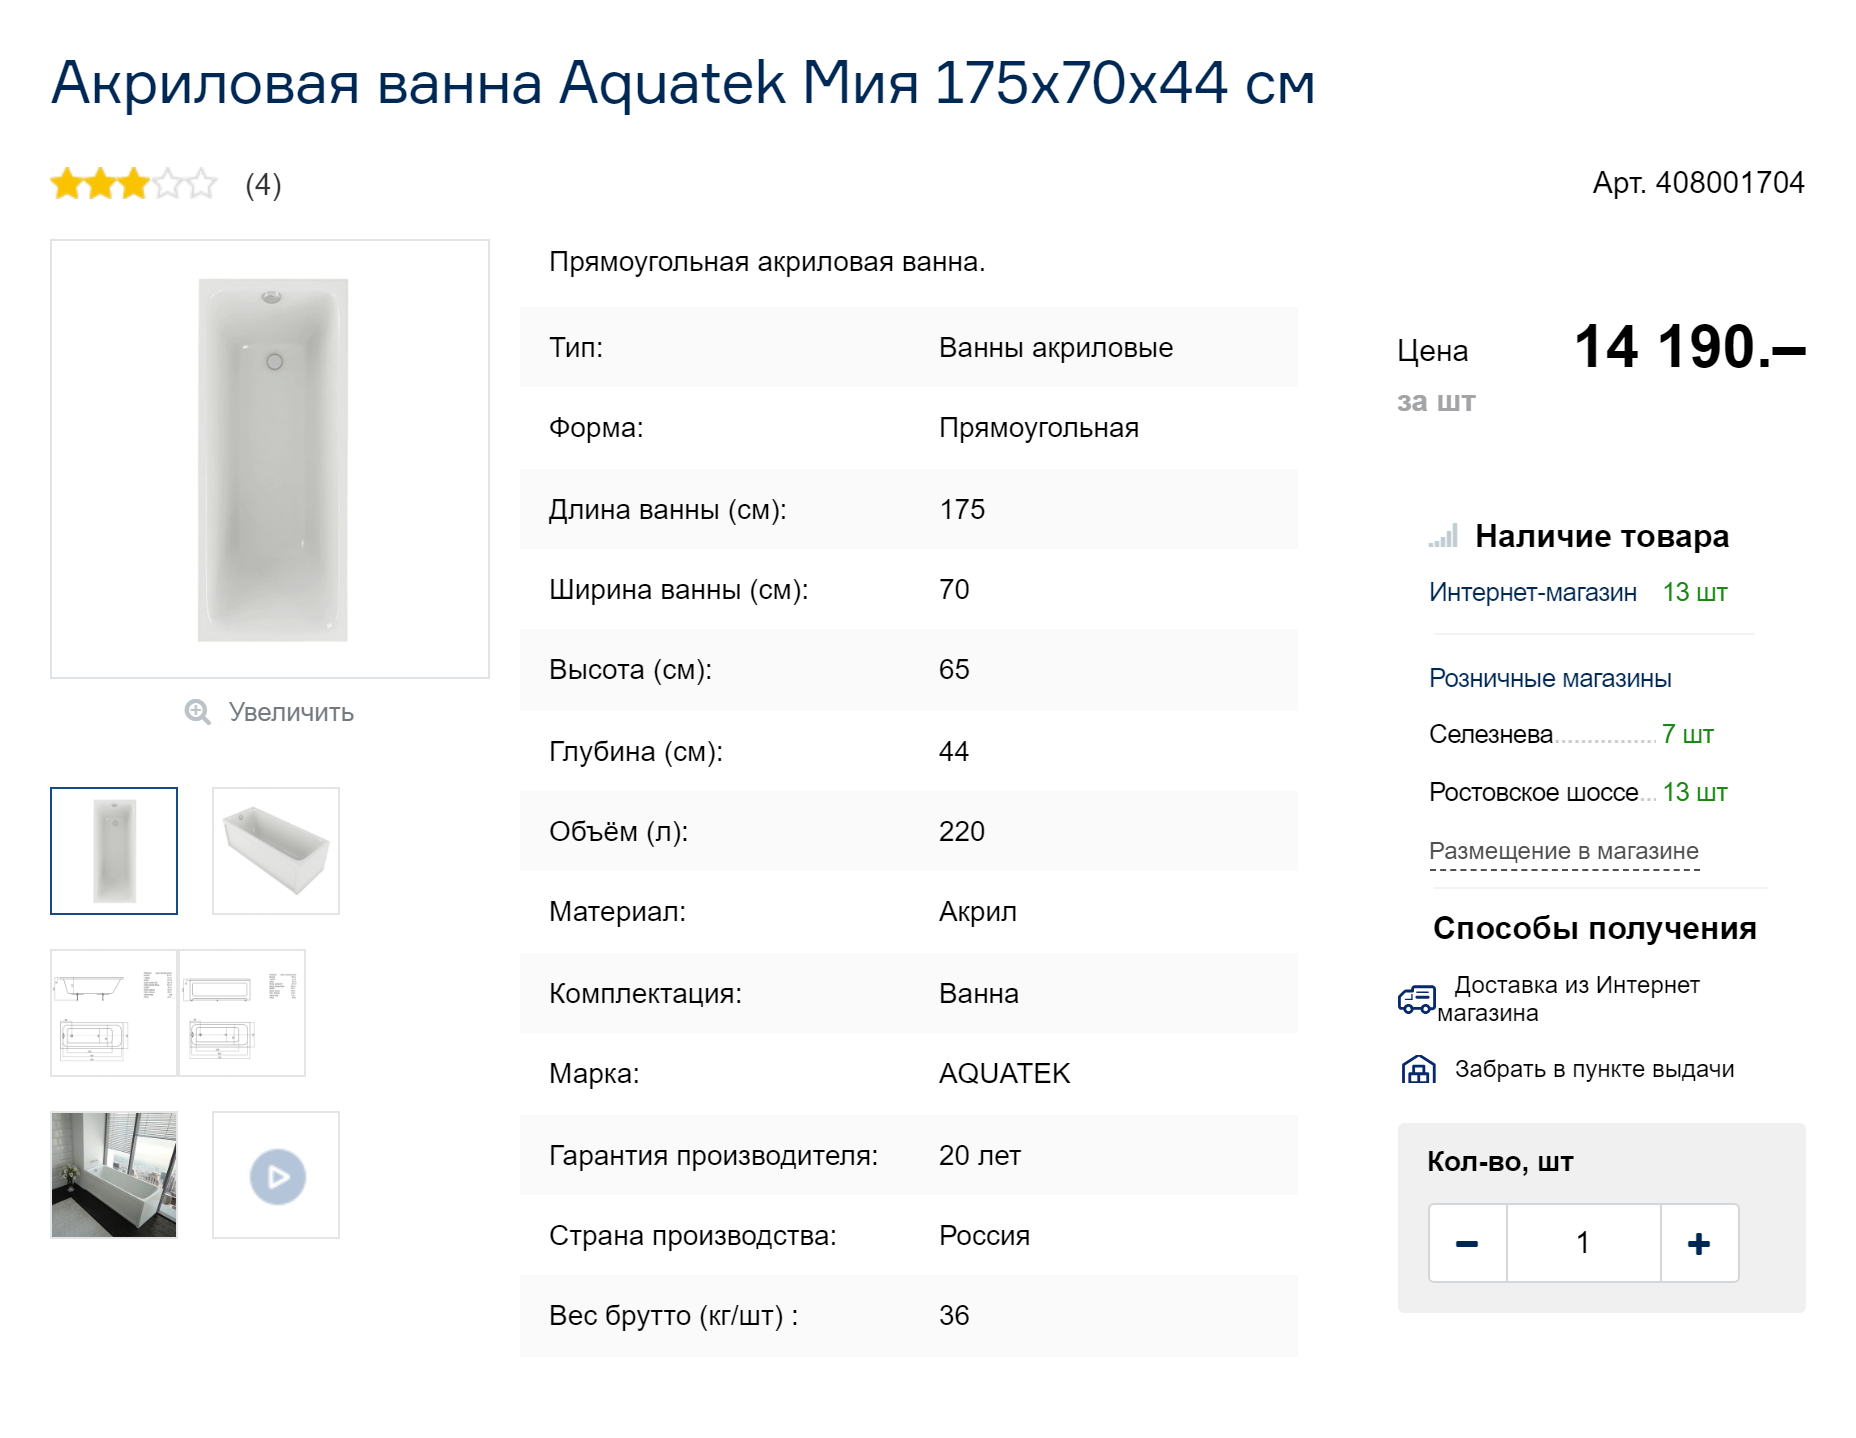 В 2023 году наша ванна стоит на 2190 ₽ дешевле. Источник: baucenter.ru